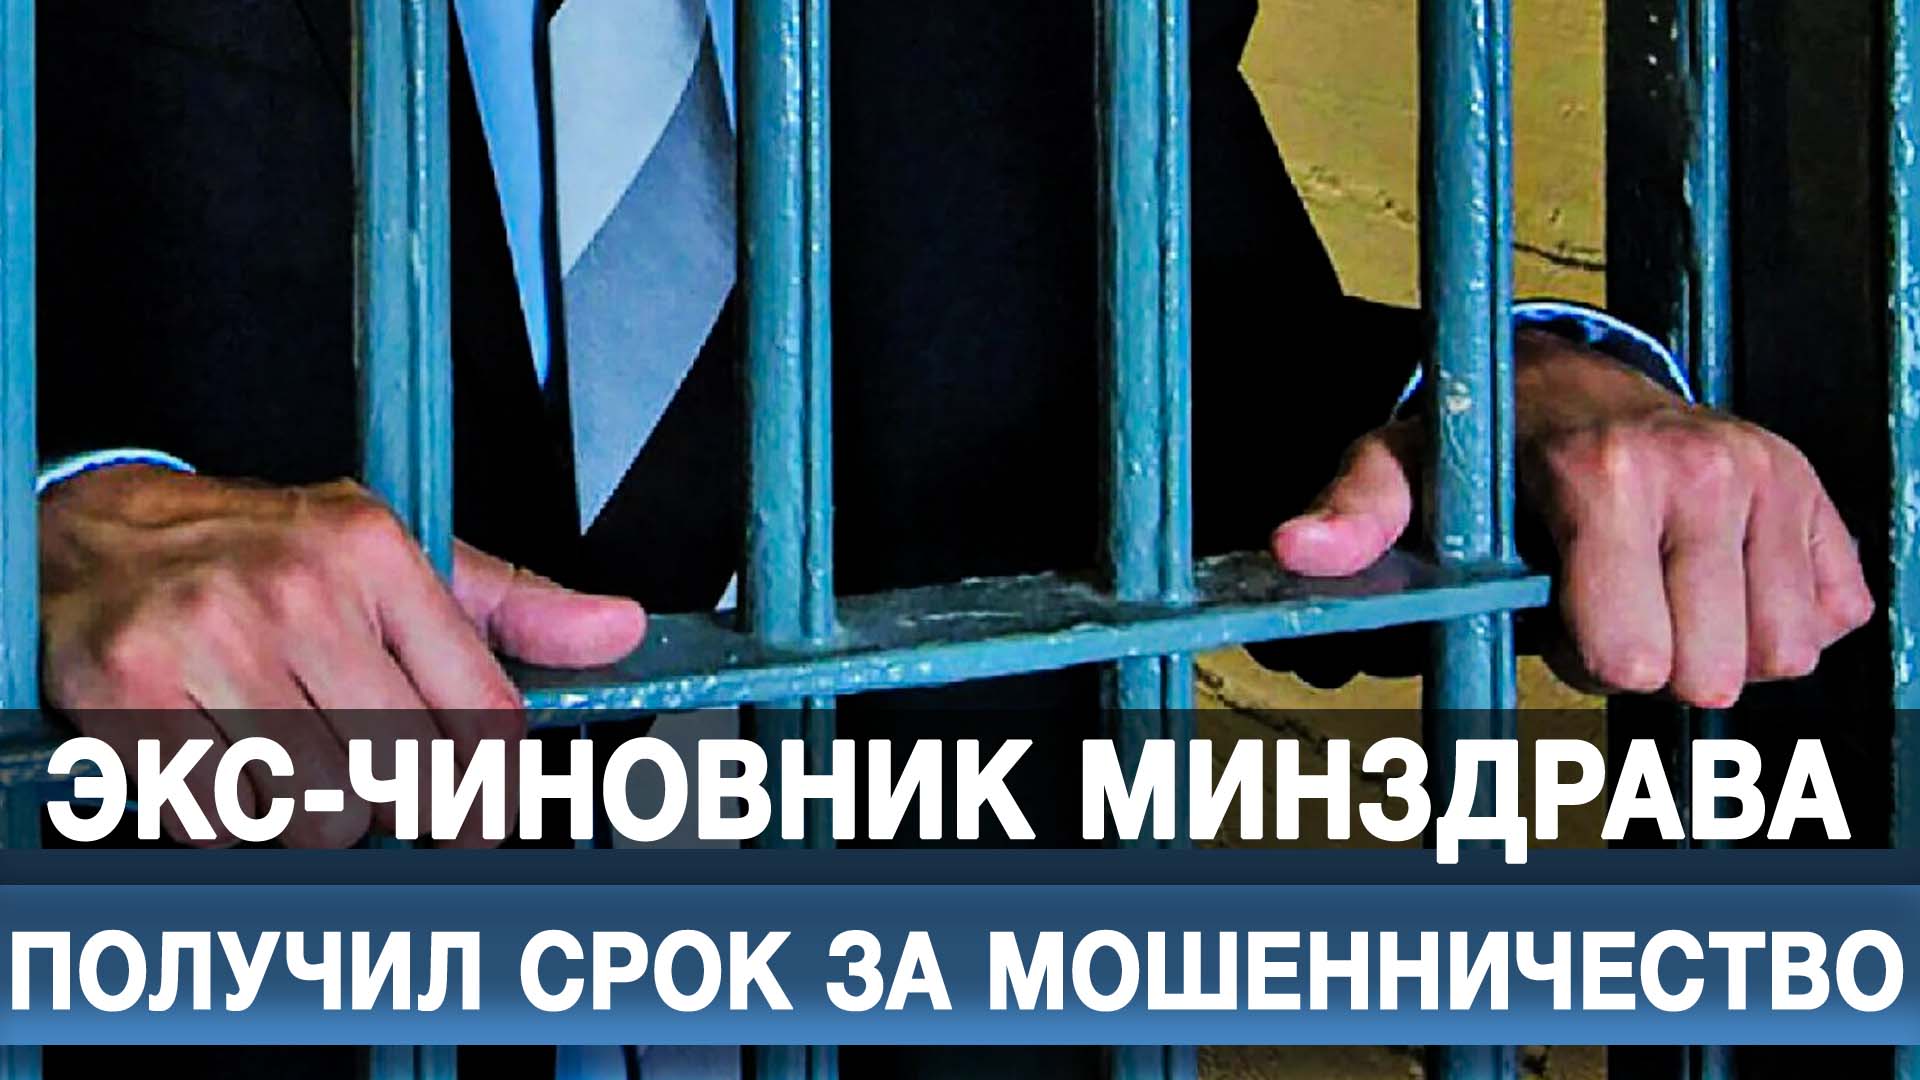 Экс-чиновник Минздрава получил срок за мошенничество